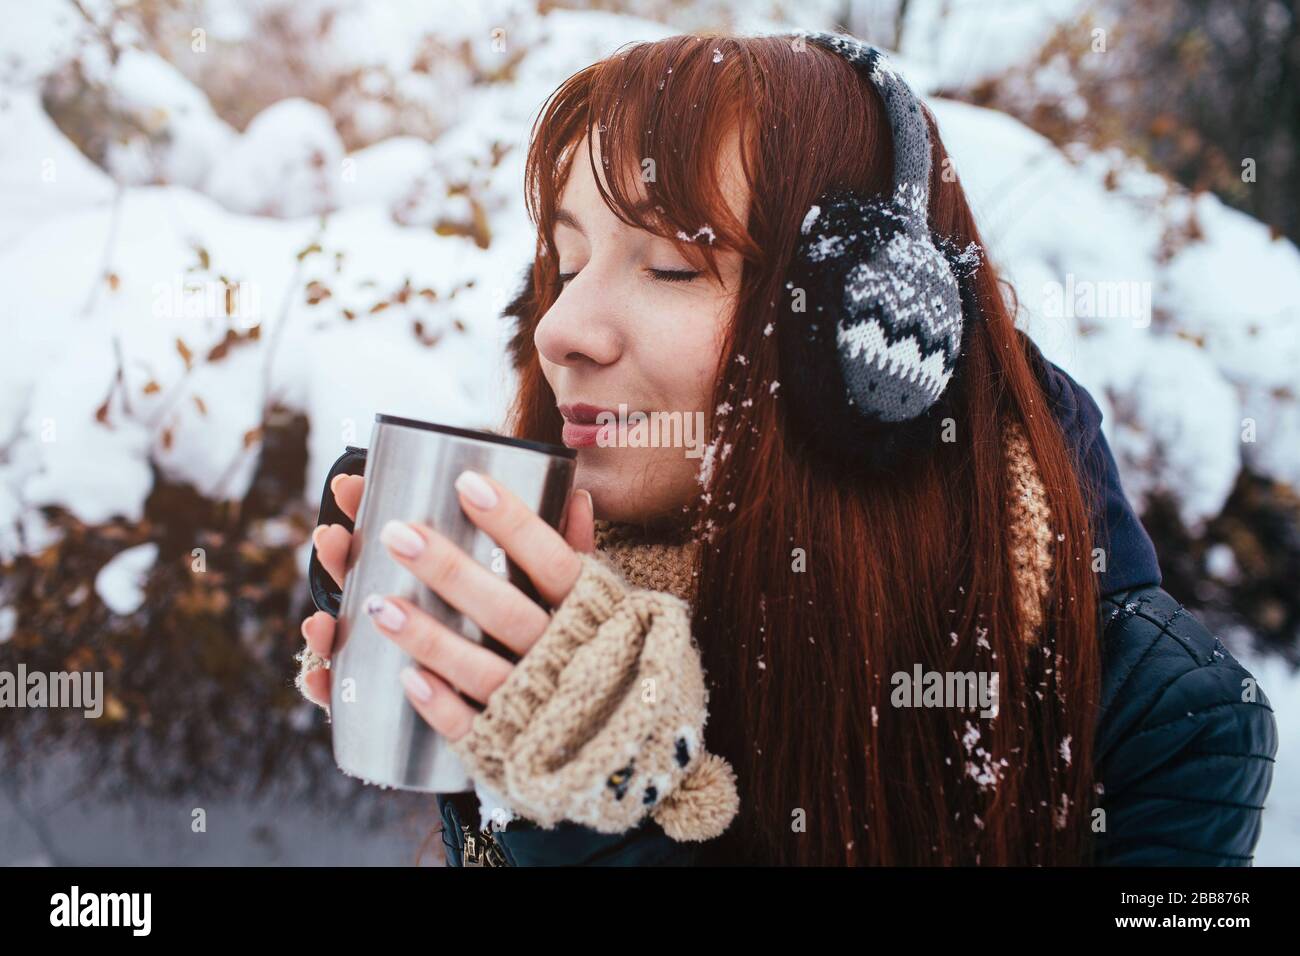 Winter. Frau mit roten Haaren, die Ohrmuscheln trägt. Mädchen trinkt heißen Tee oder Kaffee mit eiserner isolierter Tasse. Stockfoto